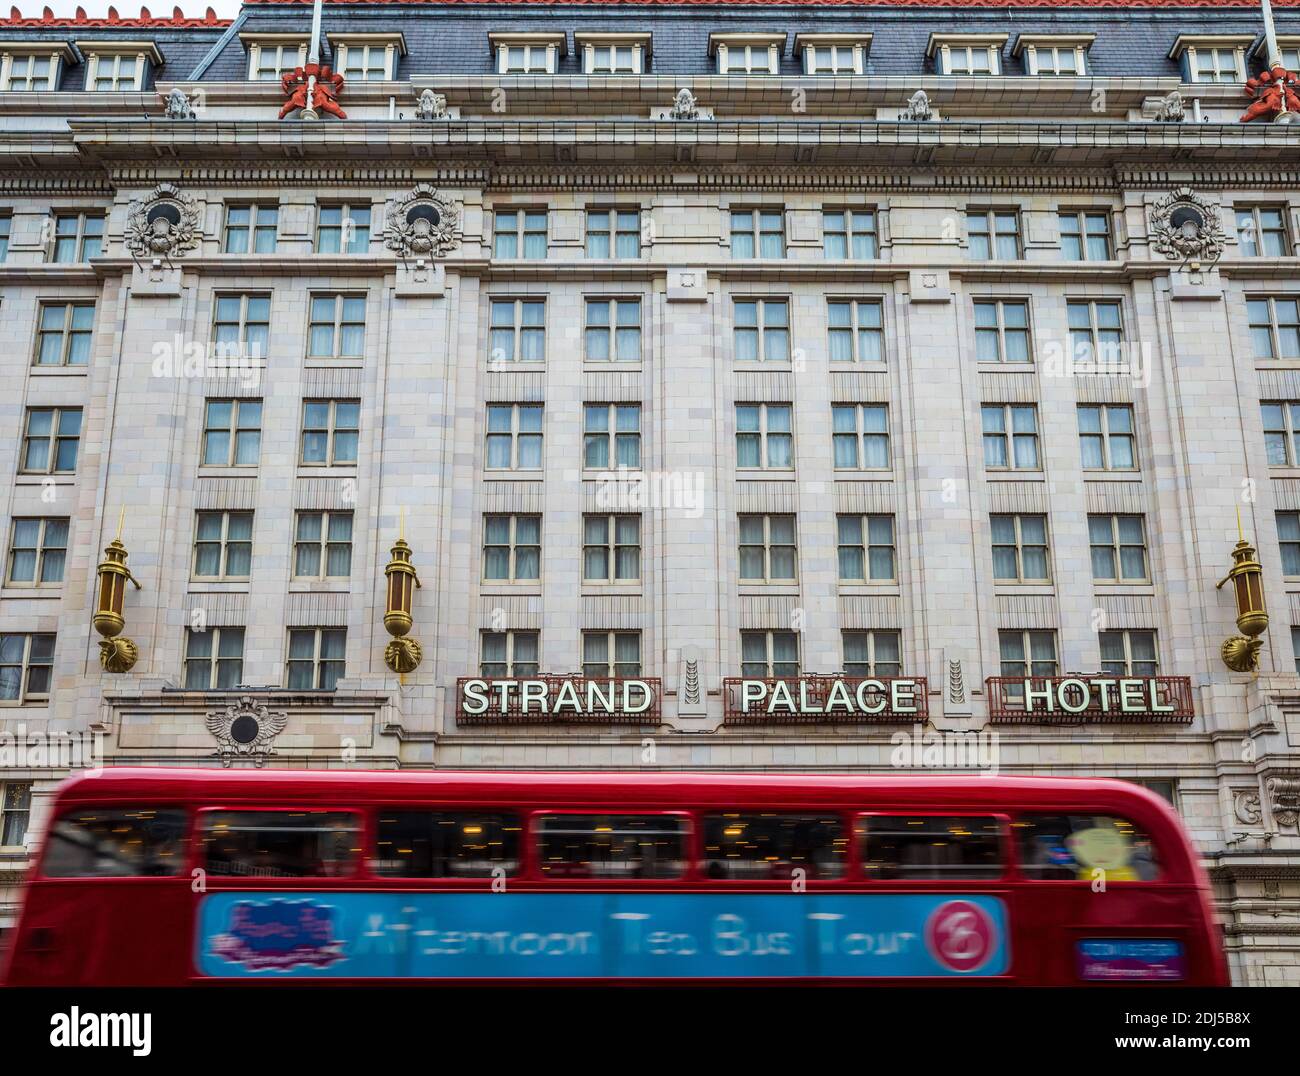 Strand Palace Hotel am Strand im Zentrum von London. Erbaut 1909 und in den 1930er Jahren im Art déco-Stil renoviert Stockfoto